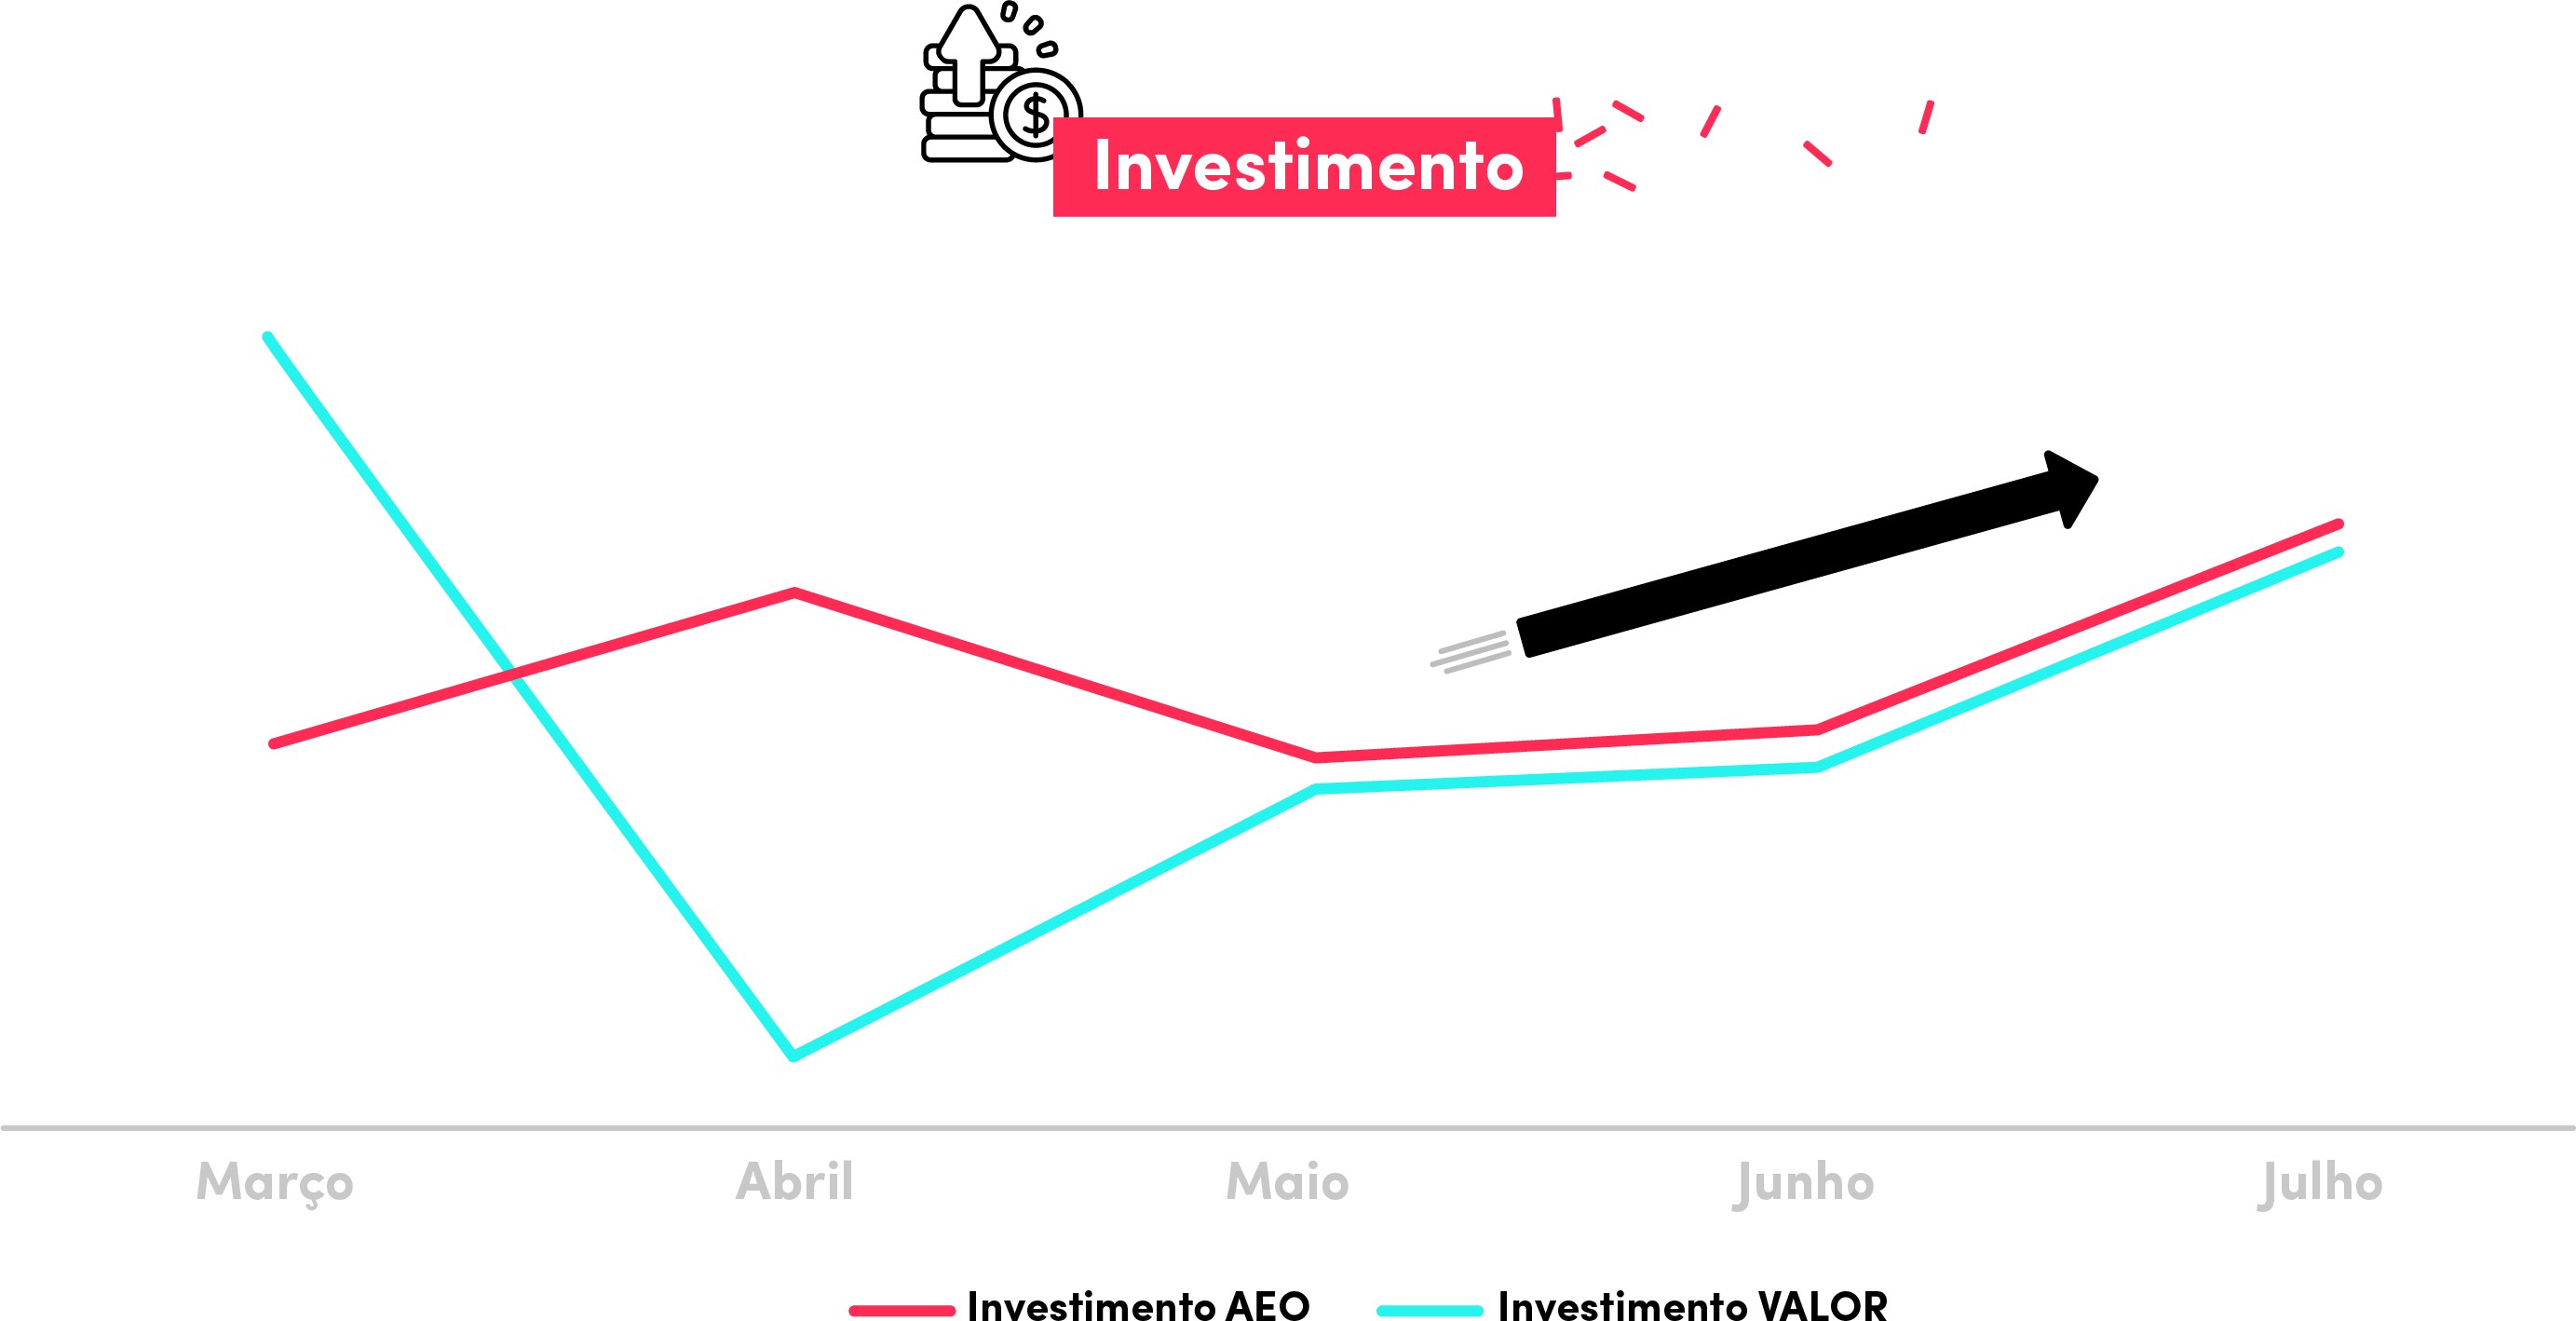 Gráfico mostrando a evolução do investimento da Casas Bahia no TikTok de março a julho de 2022